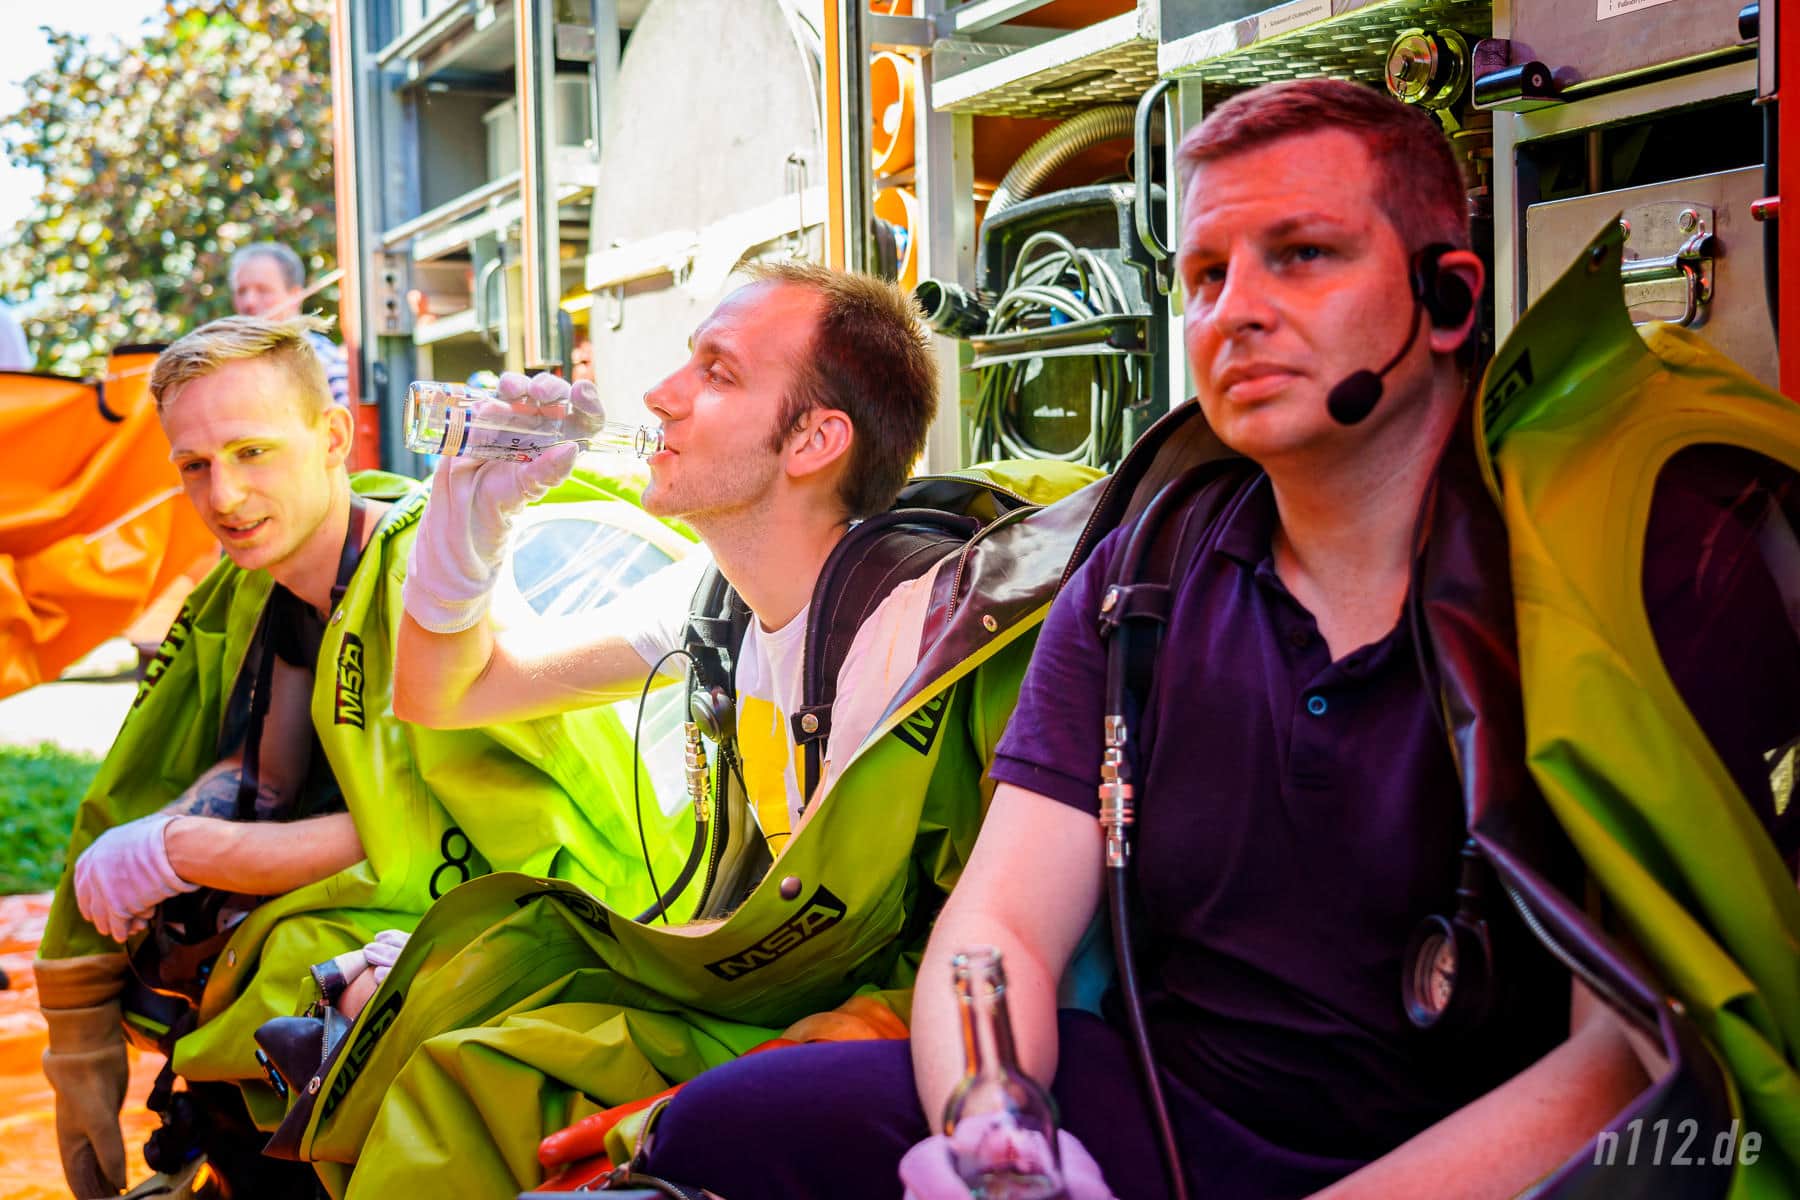 Schon beim Warten schweißgebadet: Ausgerüstet mit Vollschutzanzügen sitzen die Freiwilligen bei 33 Grad im Schatten unter einer Plane (Foto: n112.de/Stefan Hillen)